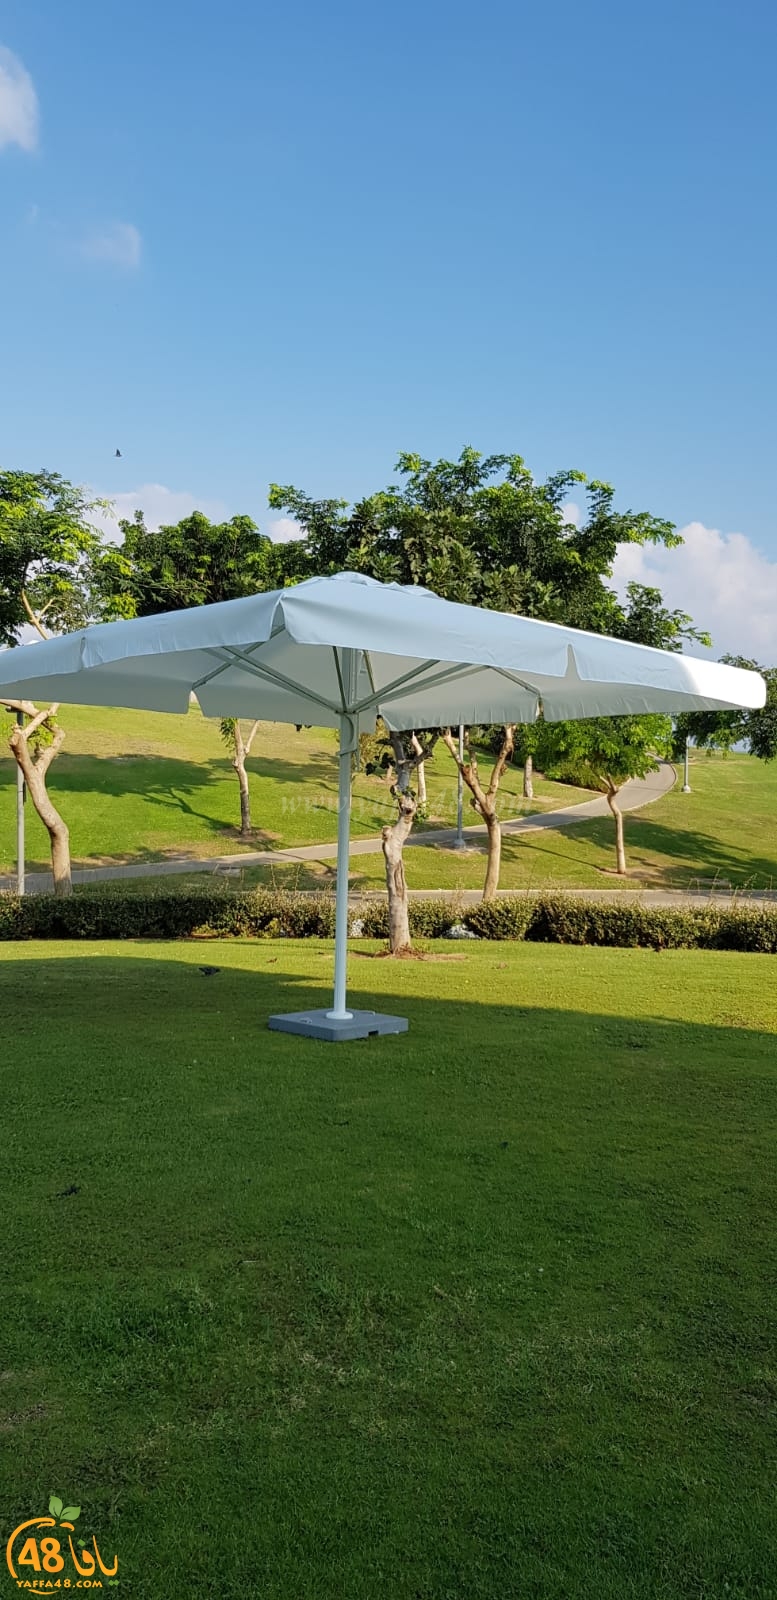  بالصور: نصب شمسيات ومراحيض متنقلة لراحة النزلاء في متنزه العجمي بيافا 